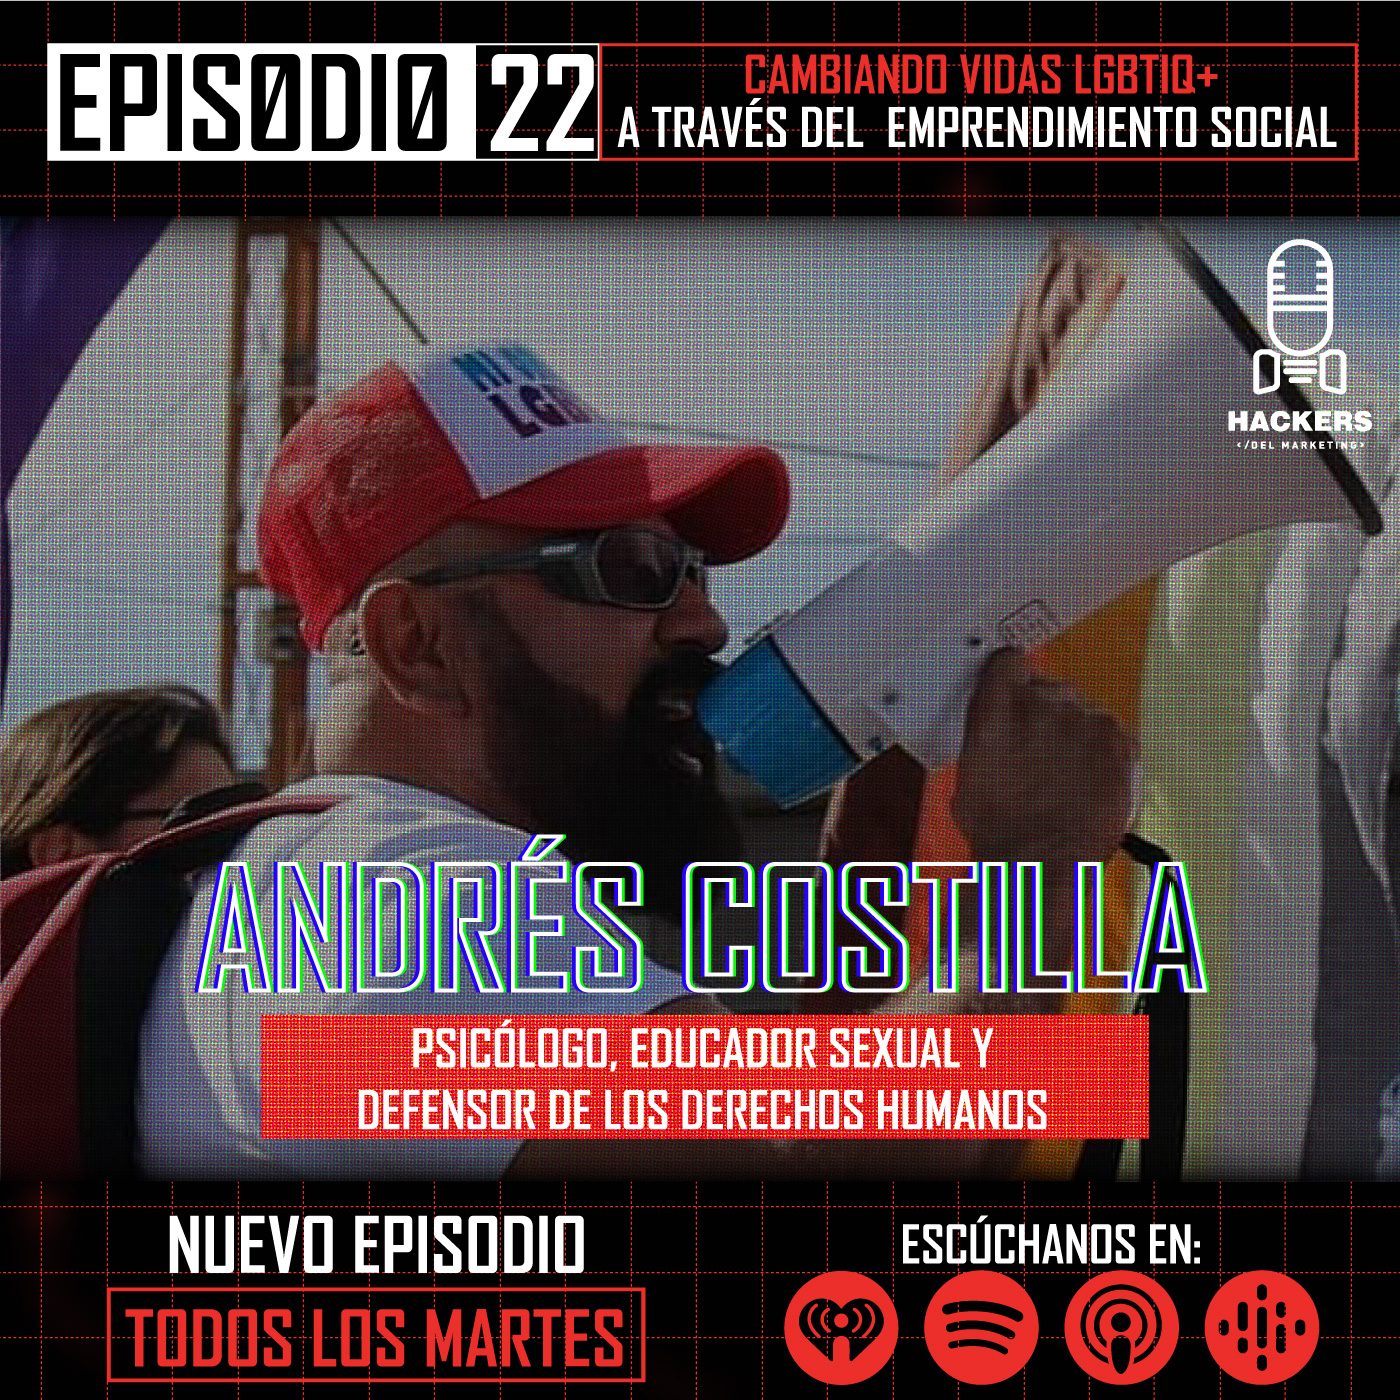 Andrés Costilla cambiando vidas LGBTIQ+ con Emprendimiento Social